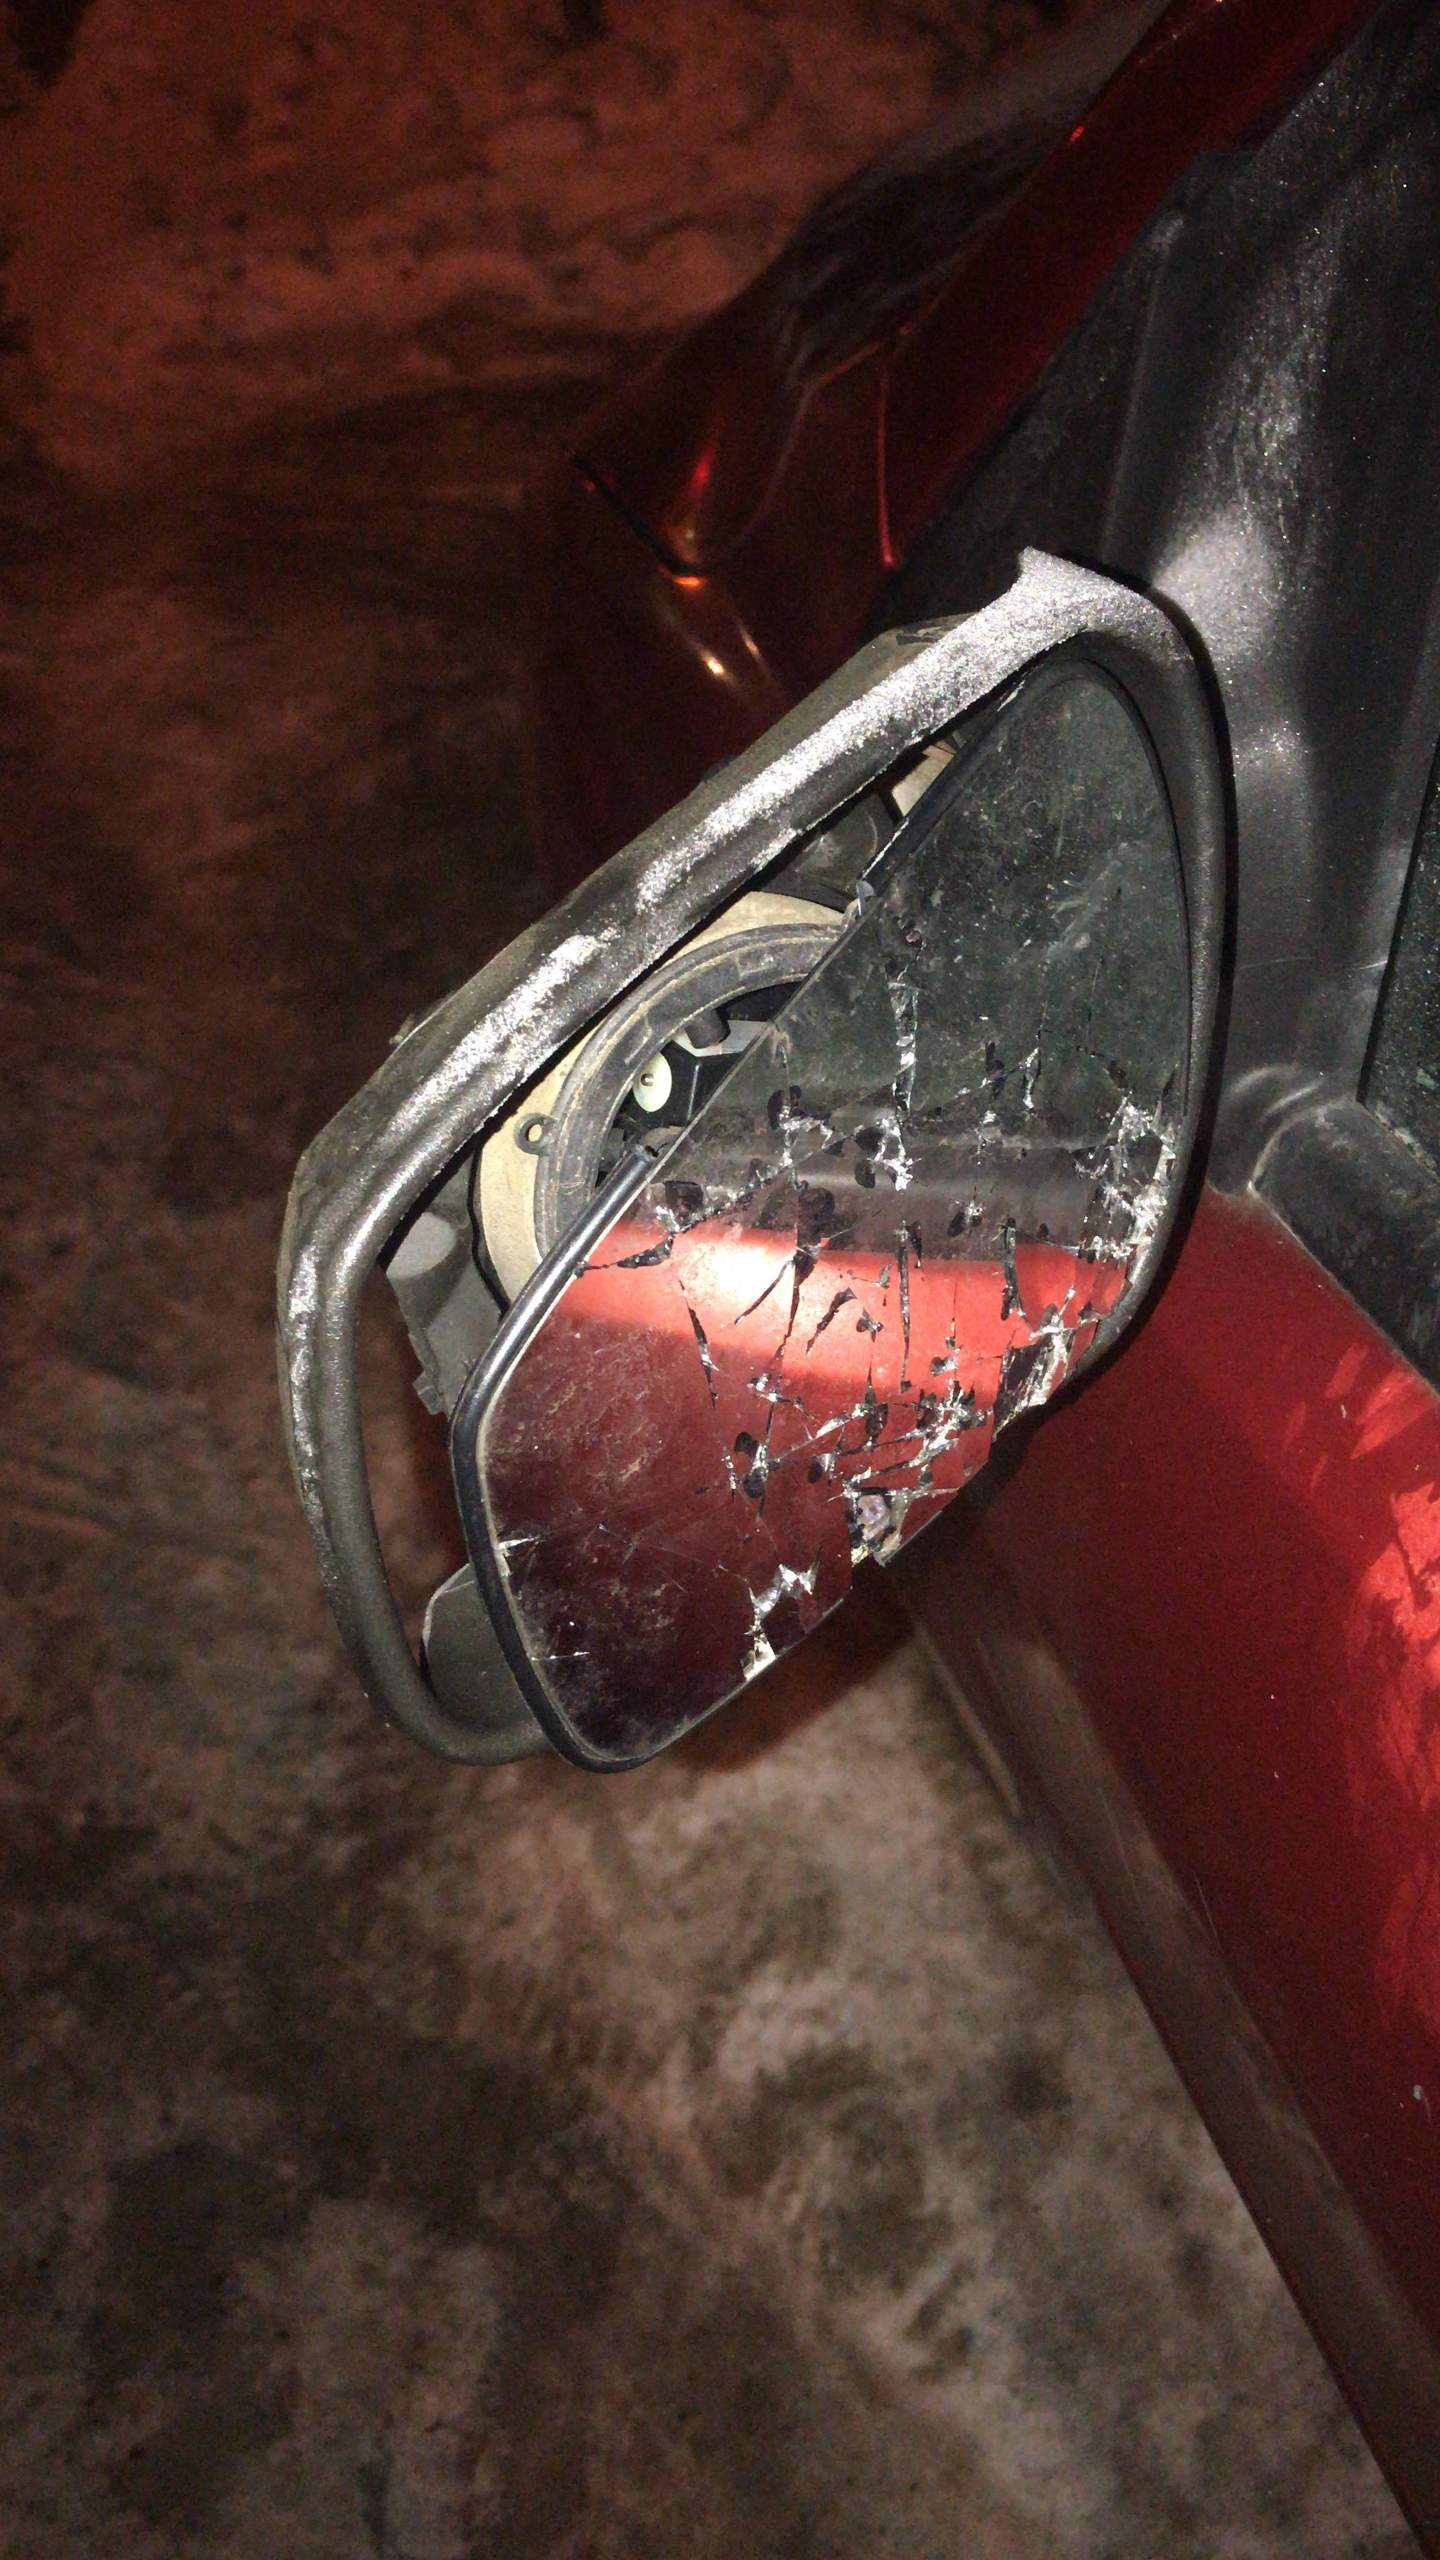 Fahrerseite Außenspiegel kaputt durch unfall weiter fahren erlaubt